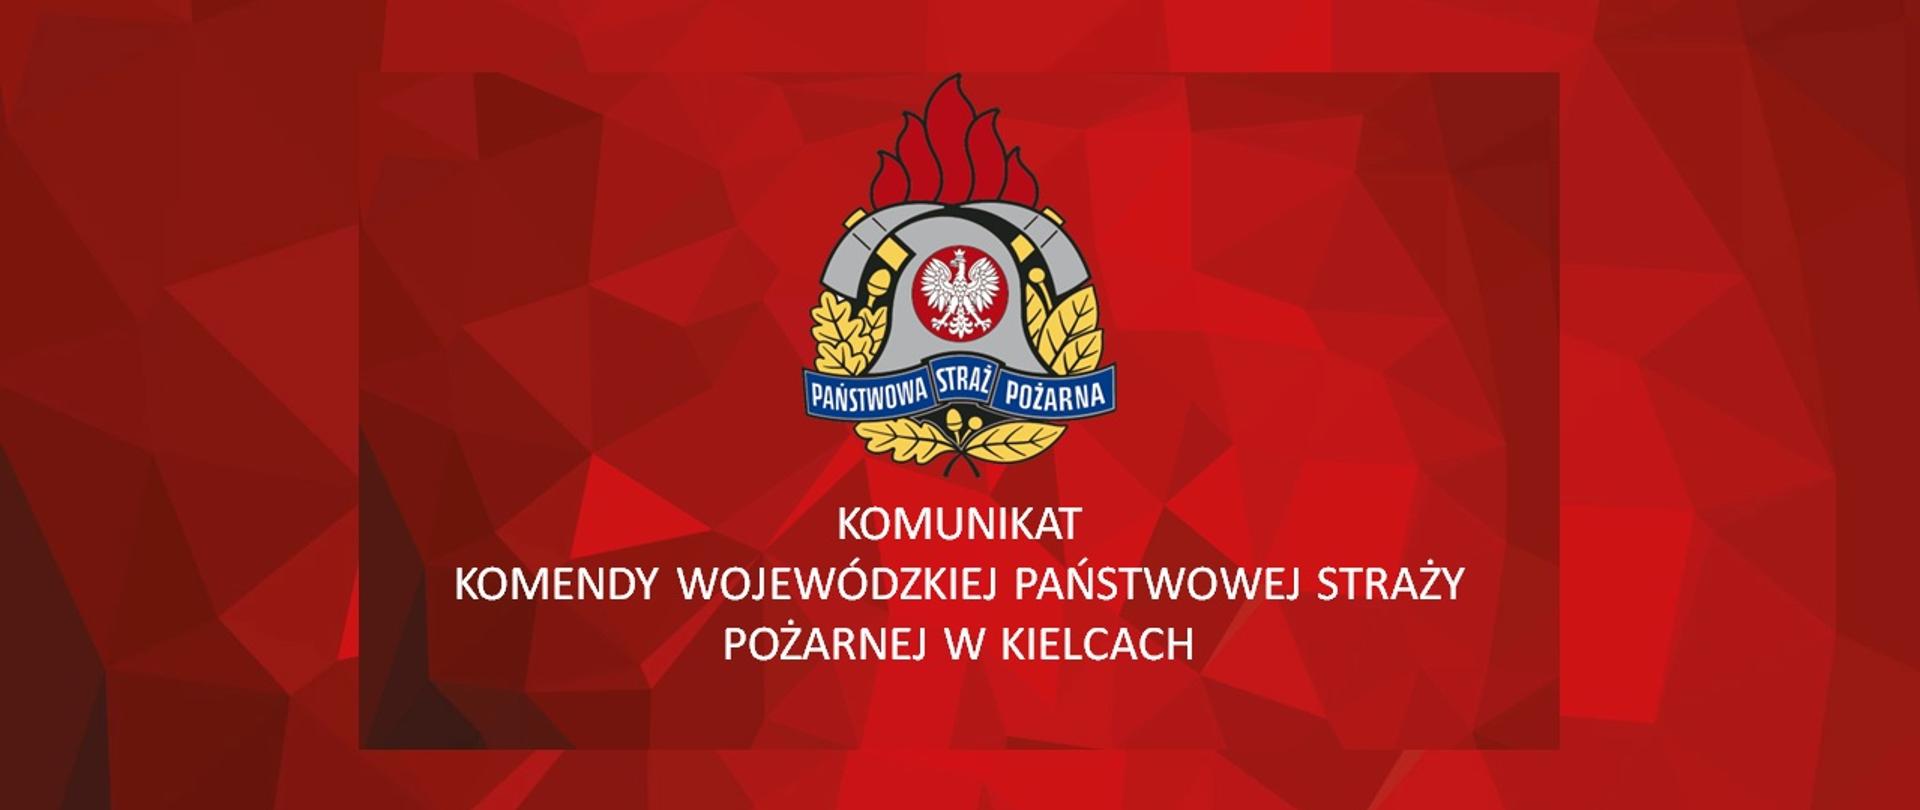 Na grafice widzimy logo PSP na czerwonym tle a pod nim napis: Komunikat Komendy Wojewódzkiej Państwowej Straży Pożarnej w Kielcach